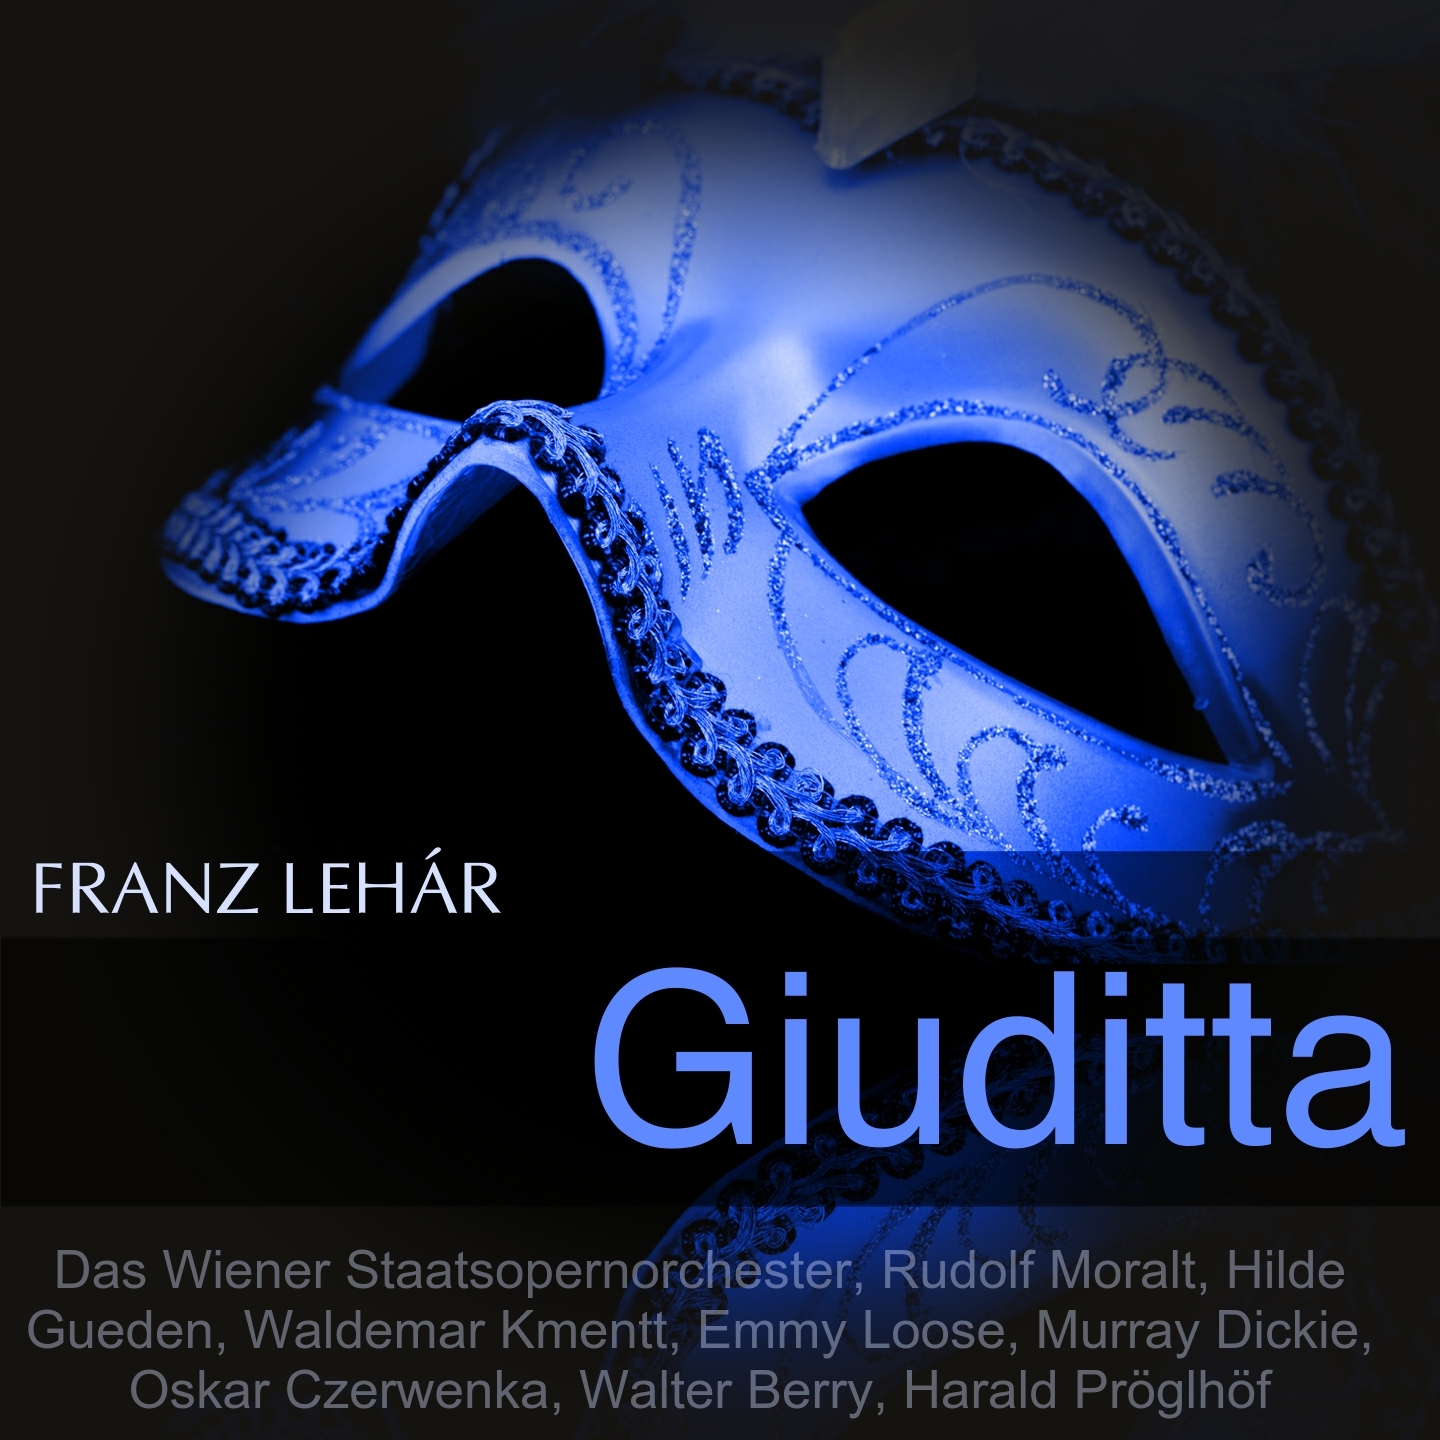 Giuditta, Scene 2: Duett. "Zwei, die sich lieben, vergessen die Welt" (Anita, Pierrino)